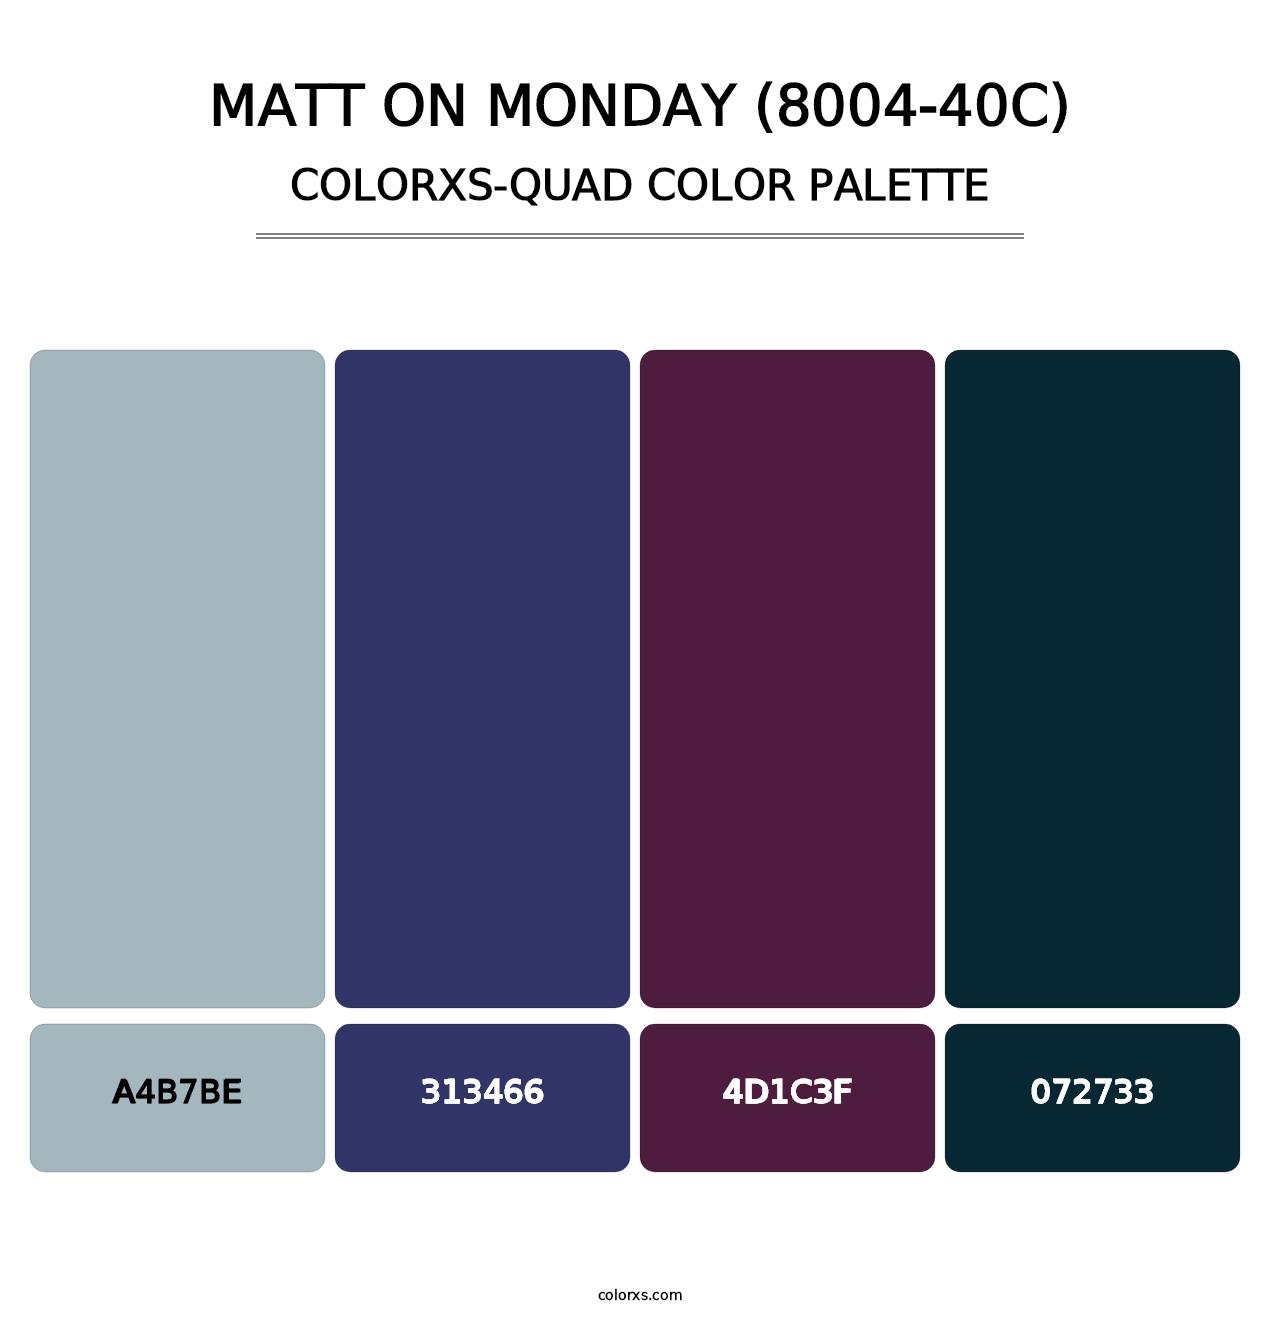 Matt on Monday (8004-40C) - Colorxs Quad Palette